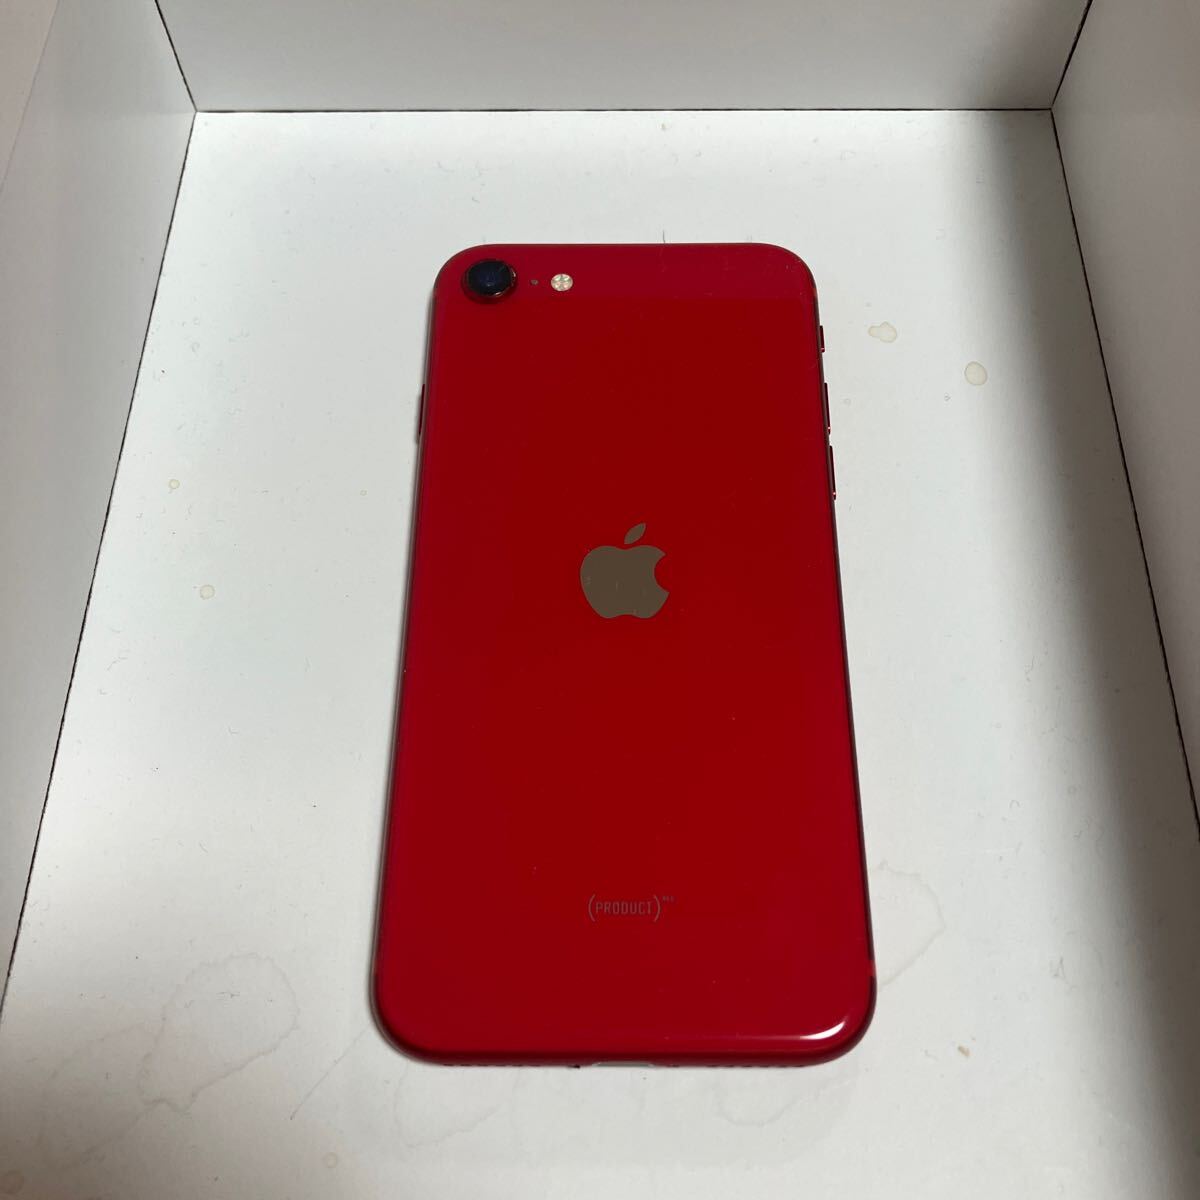 Apple iPhone SE2 SIMフリー product RED 128GB バッテリー容量100%表示エラー無の画像2